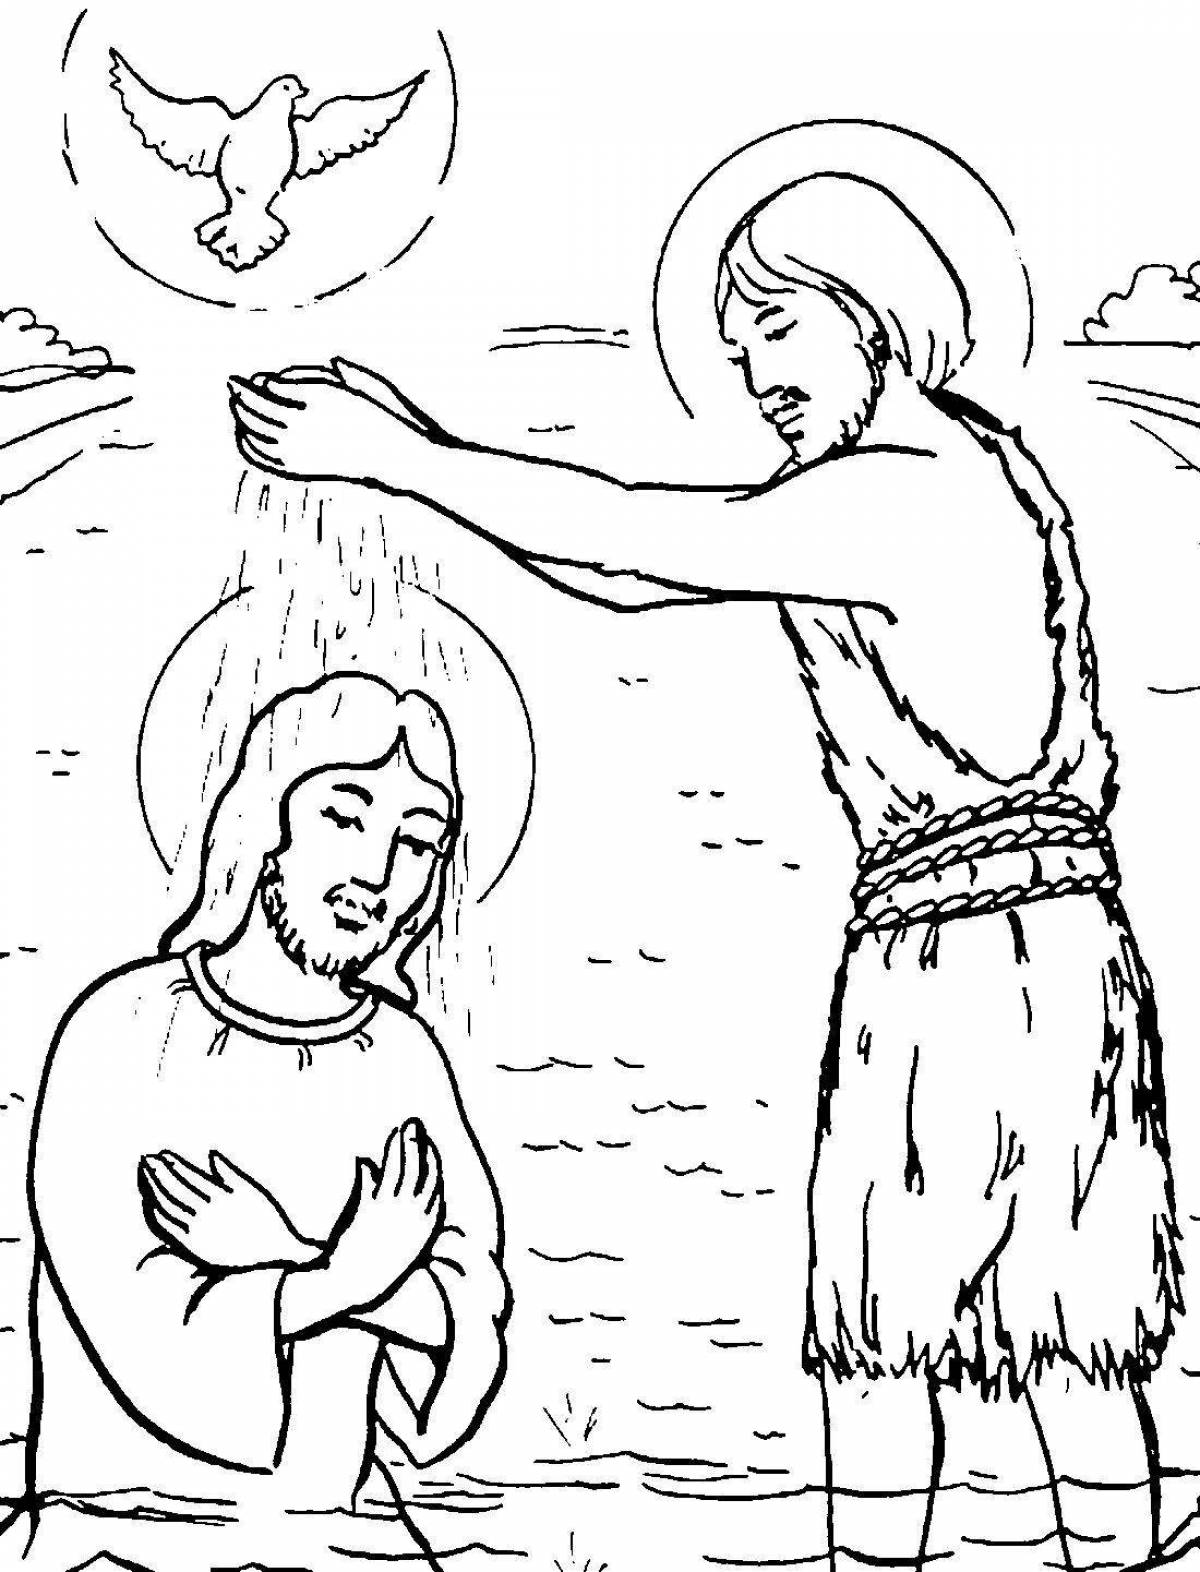 Яркая раскраска крещения иисуса христа для детей